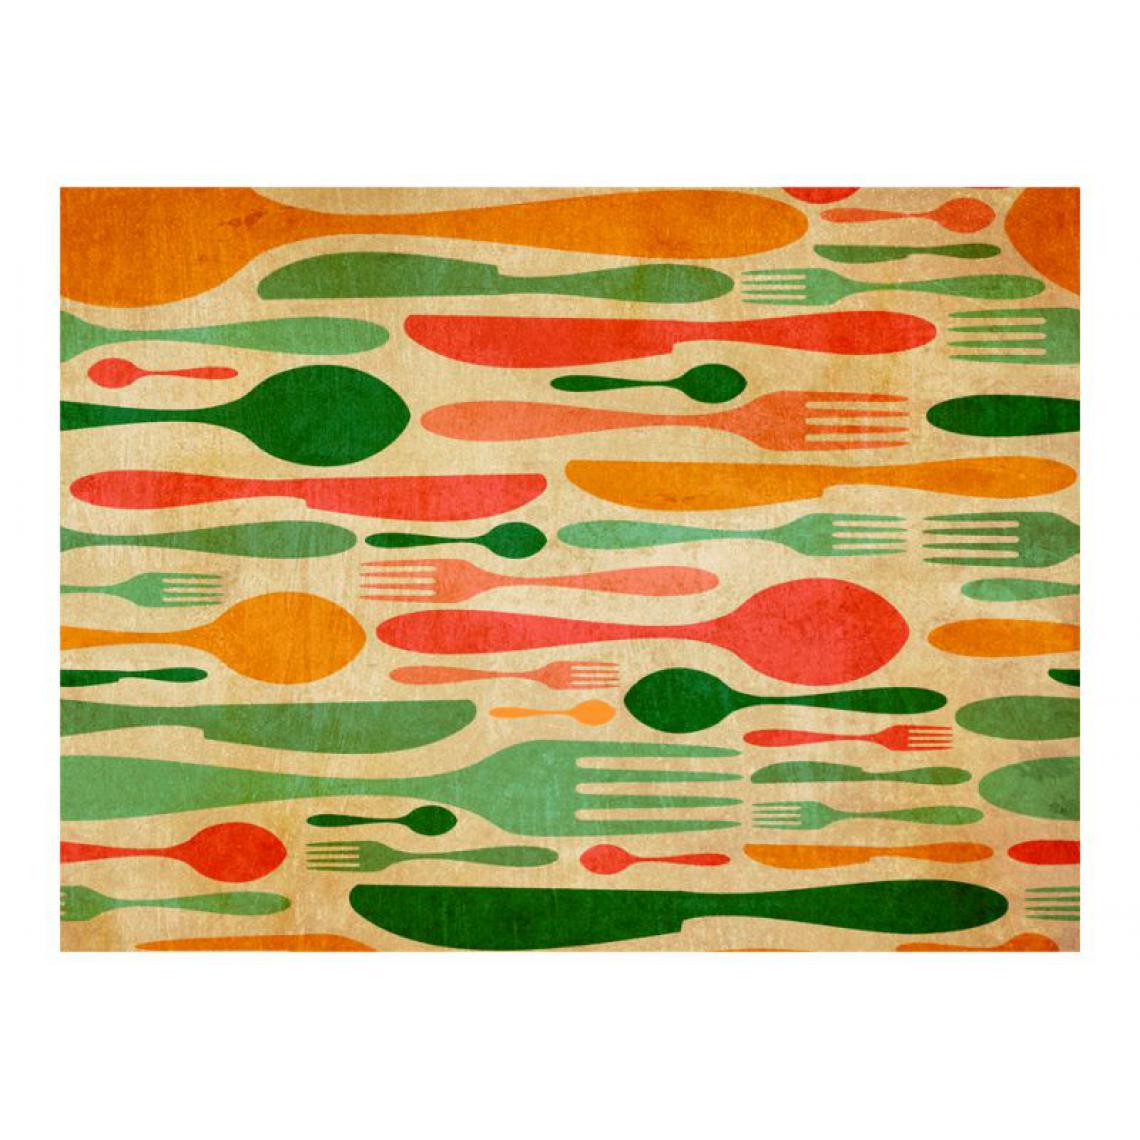 Artgeist - Papier peint - Couverts en vert et orange .Taille : 200x154 - Papier peint